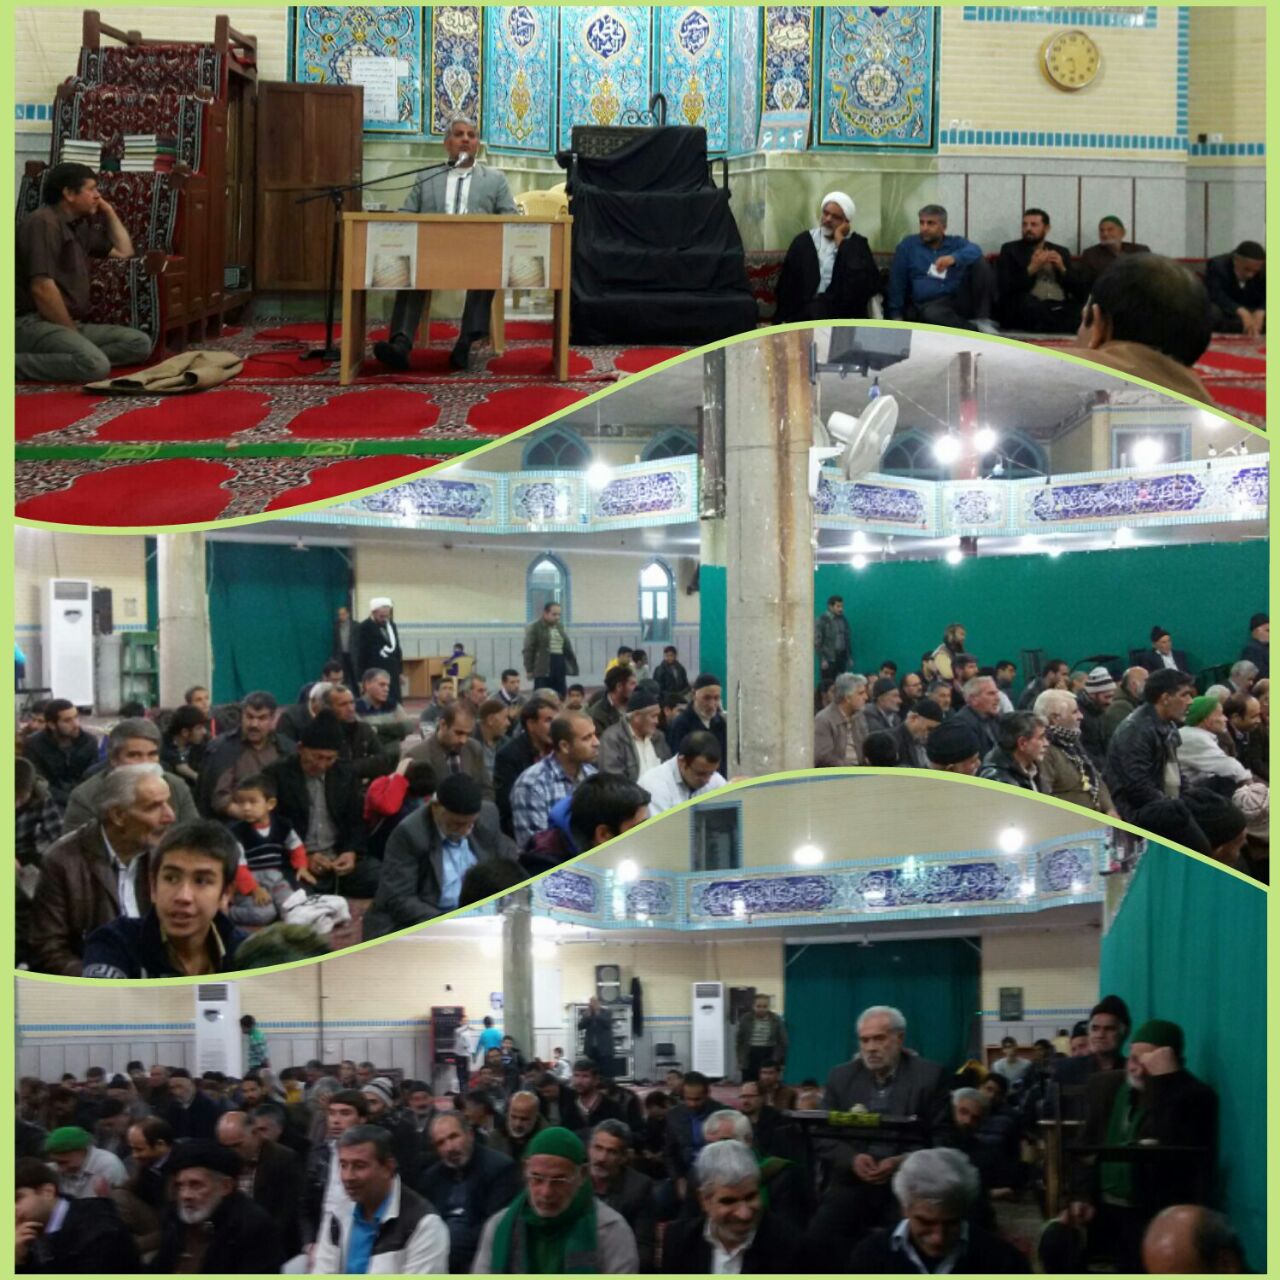 برگزاری نشست روشنگری در مسجد صاحب الزمان شهر قنوات/////////////ویرایش شد